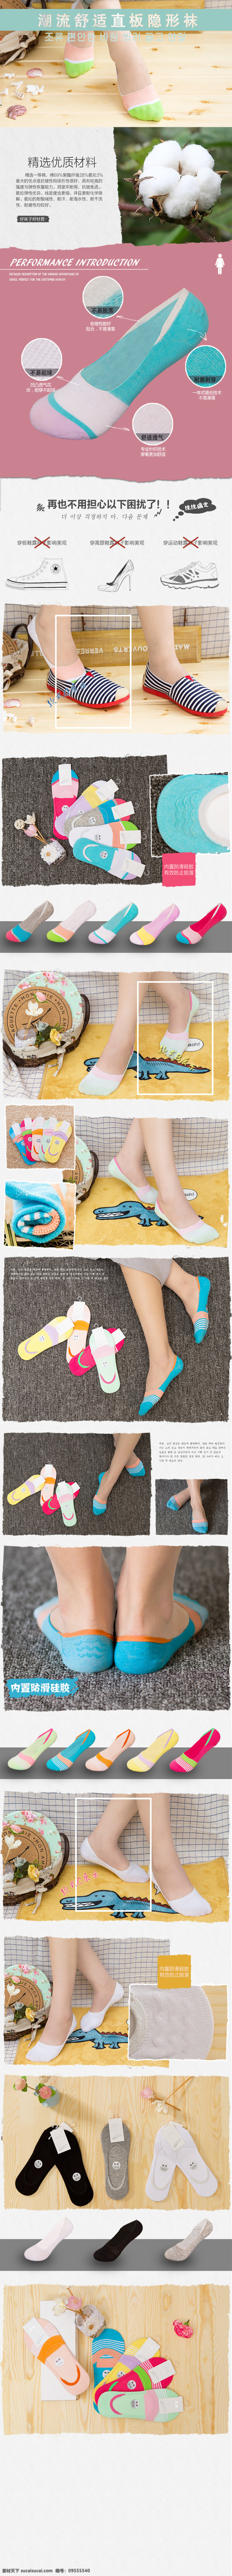 直板 隐形 女款 袜子 隐形袜 女款袜子 详情页模版 淘宝 模版 日韩风格